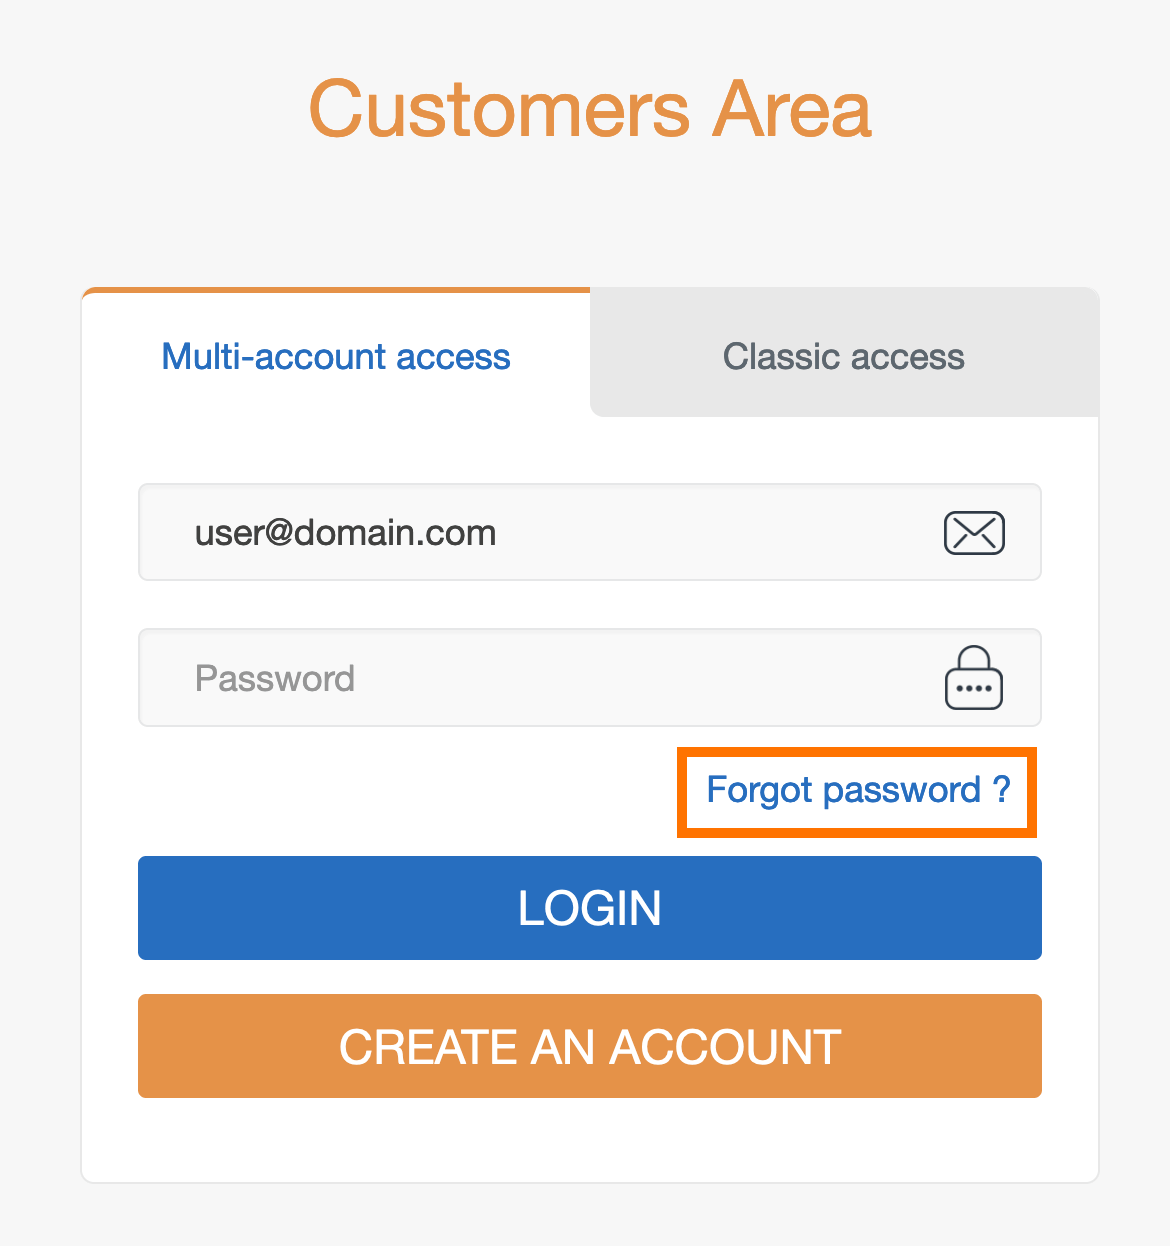 en-customer-area-multiaccount-forgot-password.png